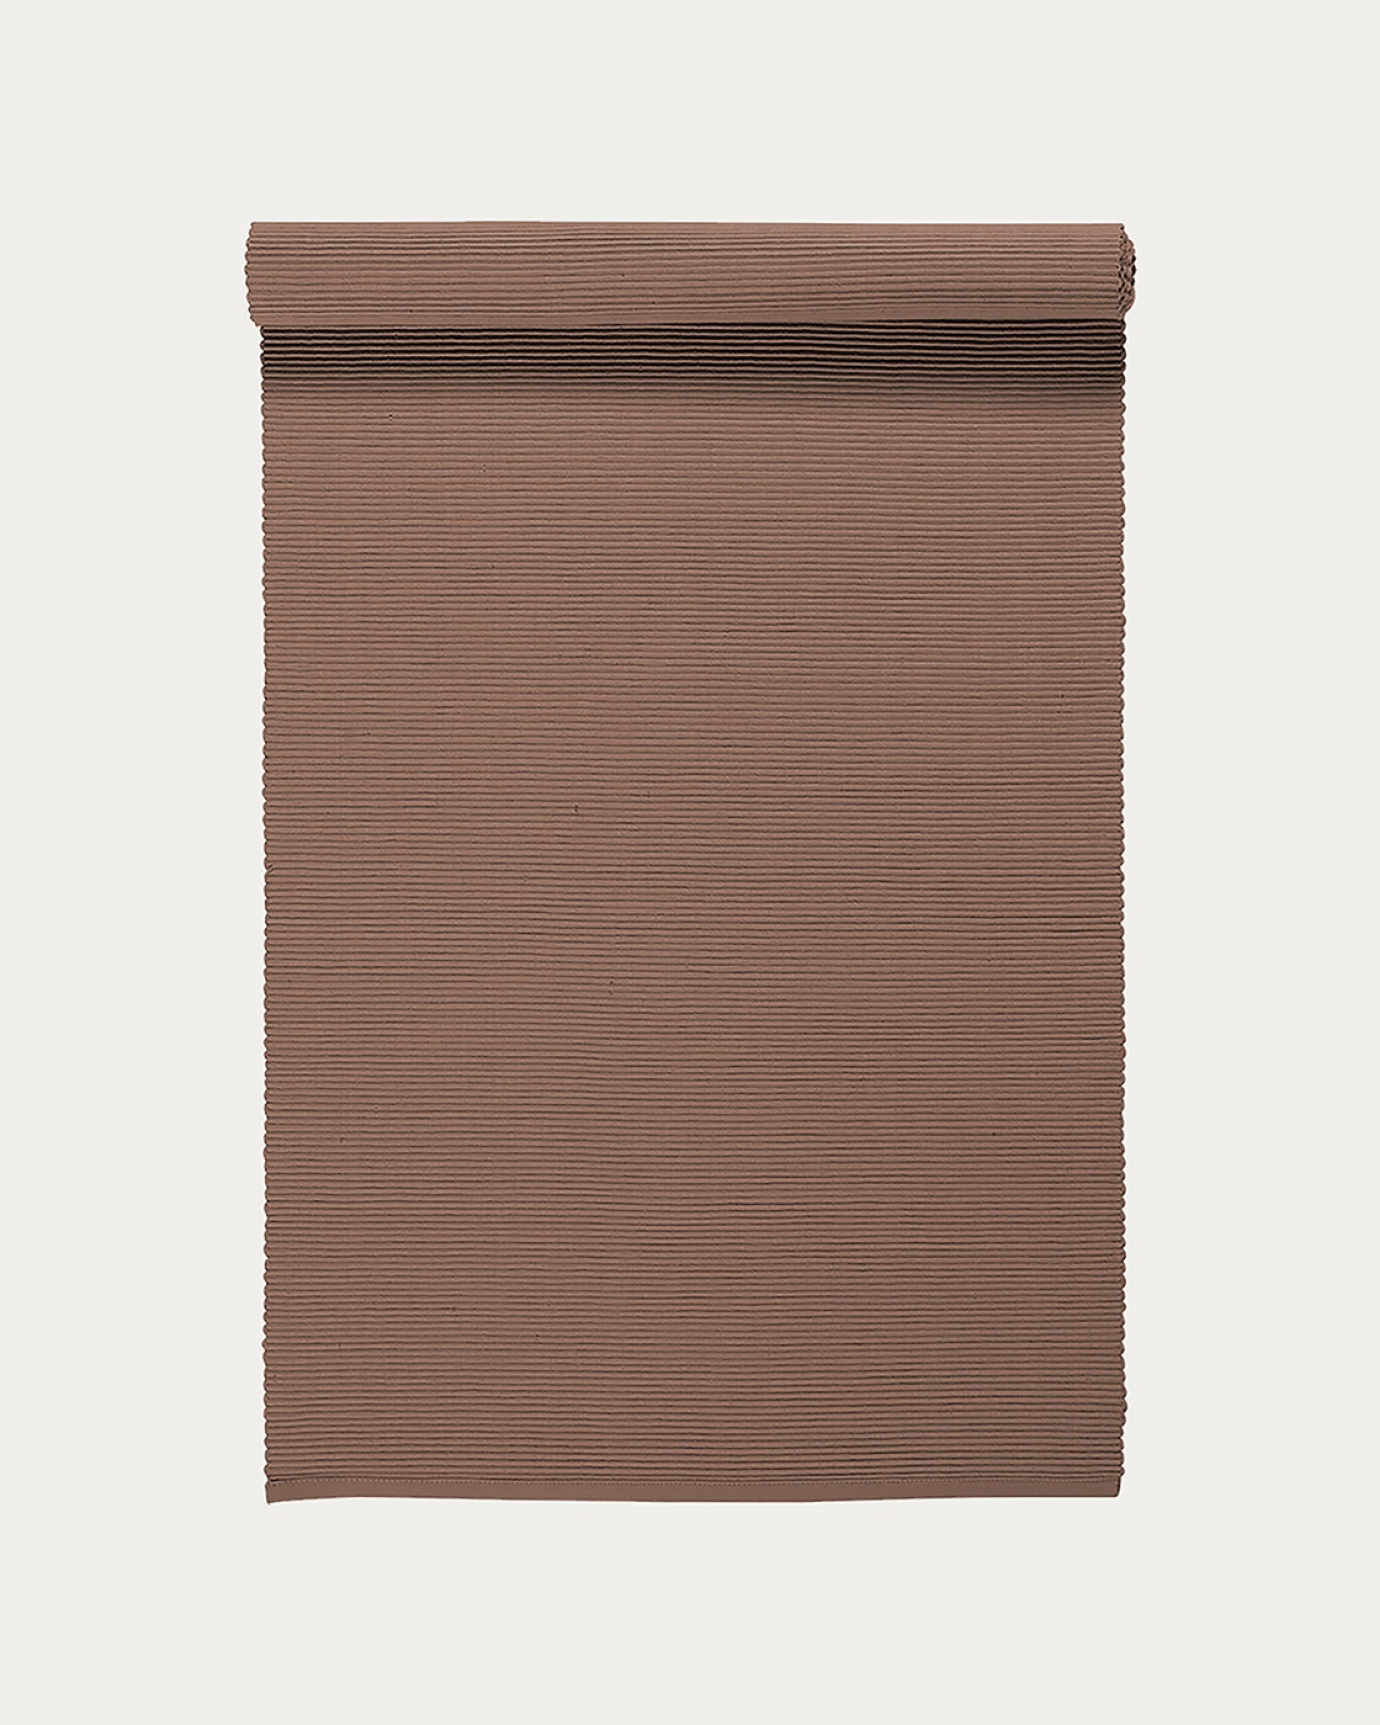 Produktbild dunkles taupe UNI Tischläufer aus weicher Baumwolle in Rippenqualität von LINUM DESIGN. Größe 45x150 cm.